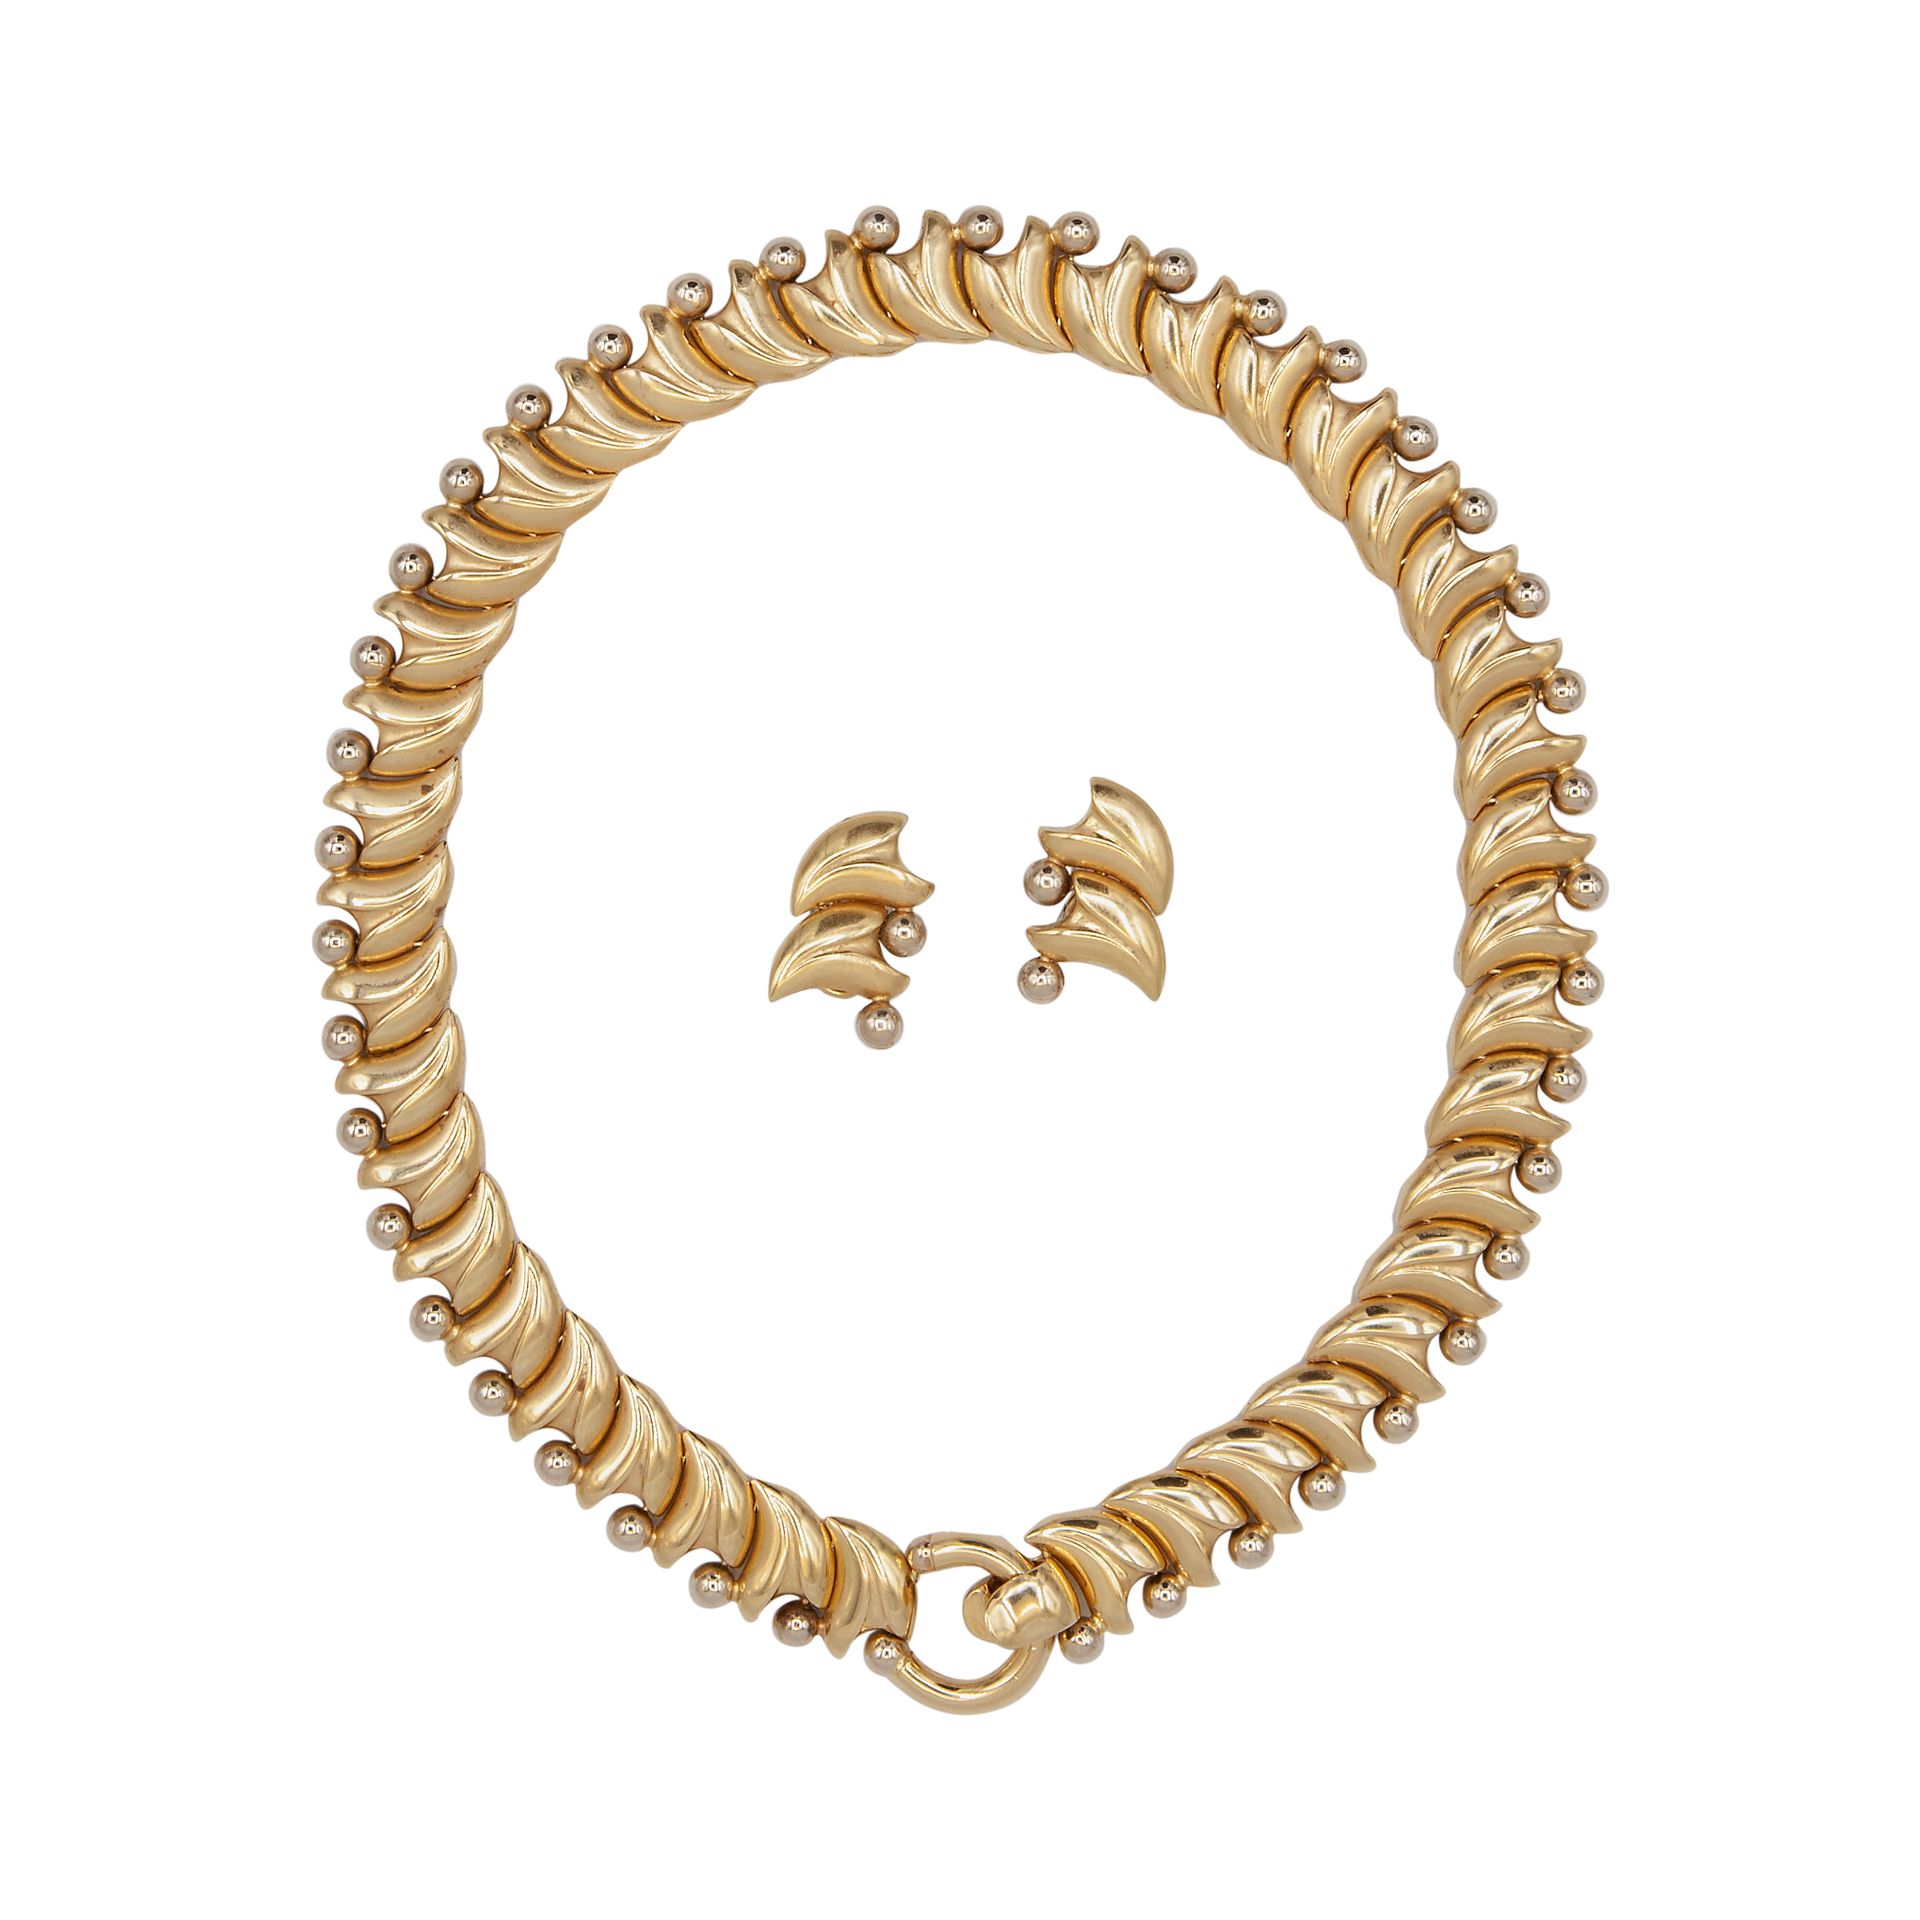 Null 由18K黄金制成的项链和耳环组成的配饰。项链长15厘米，耳环大小3x2厘米。总重量为90.7克